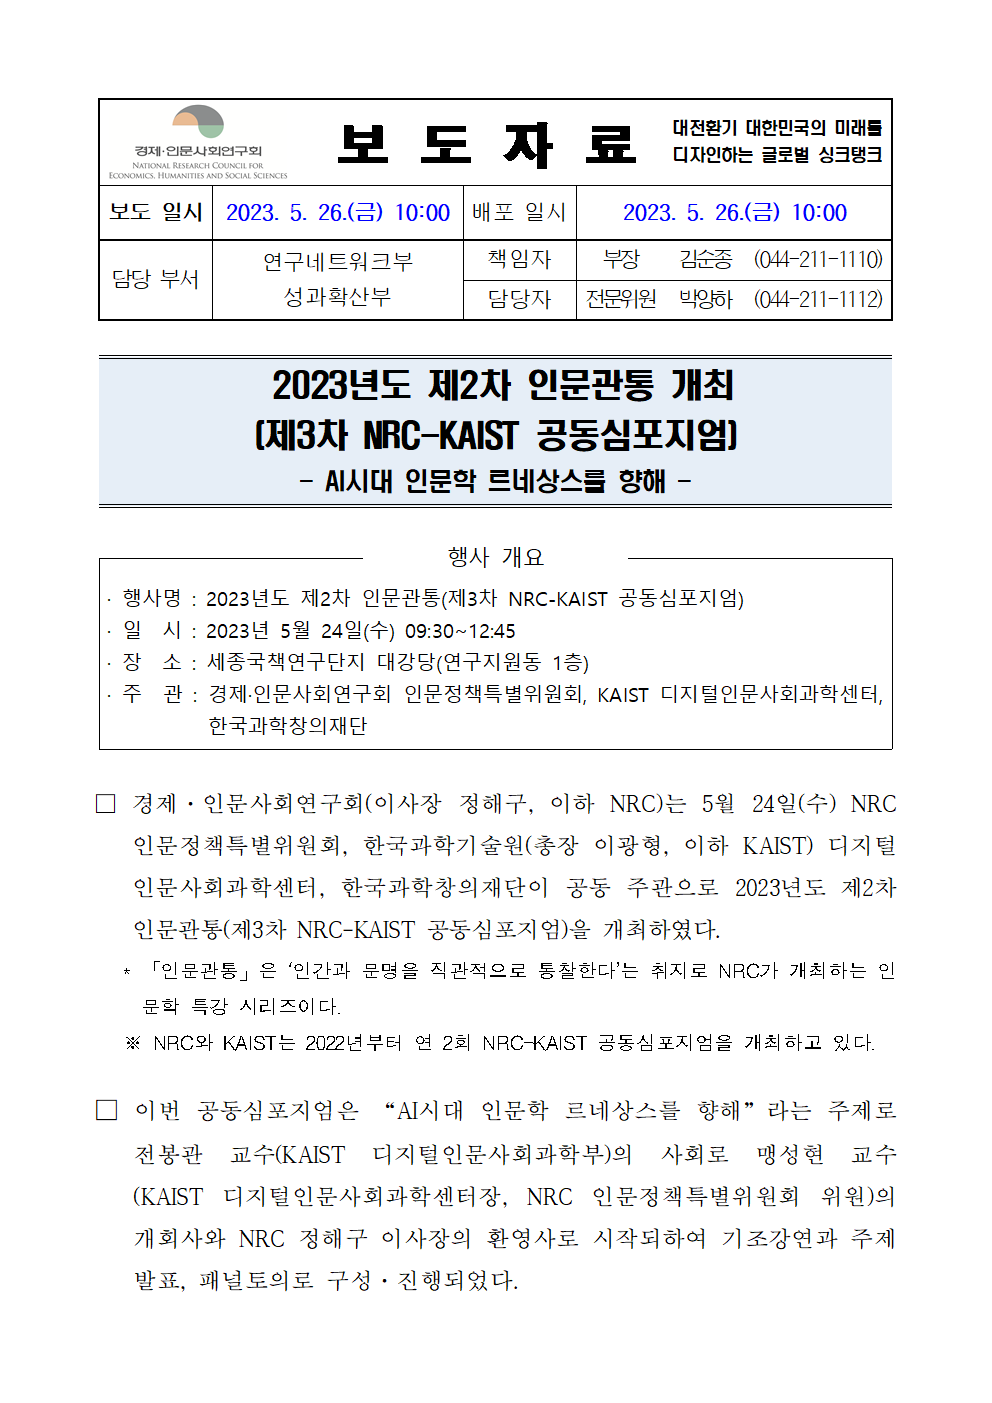 (1/5) 2023년도 제2차 인문관통 개최 보도자료 - 자세한 내용은 하단 참조